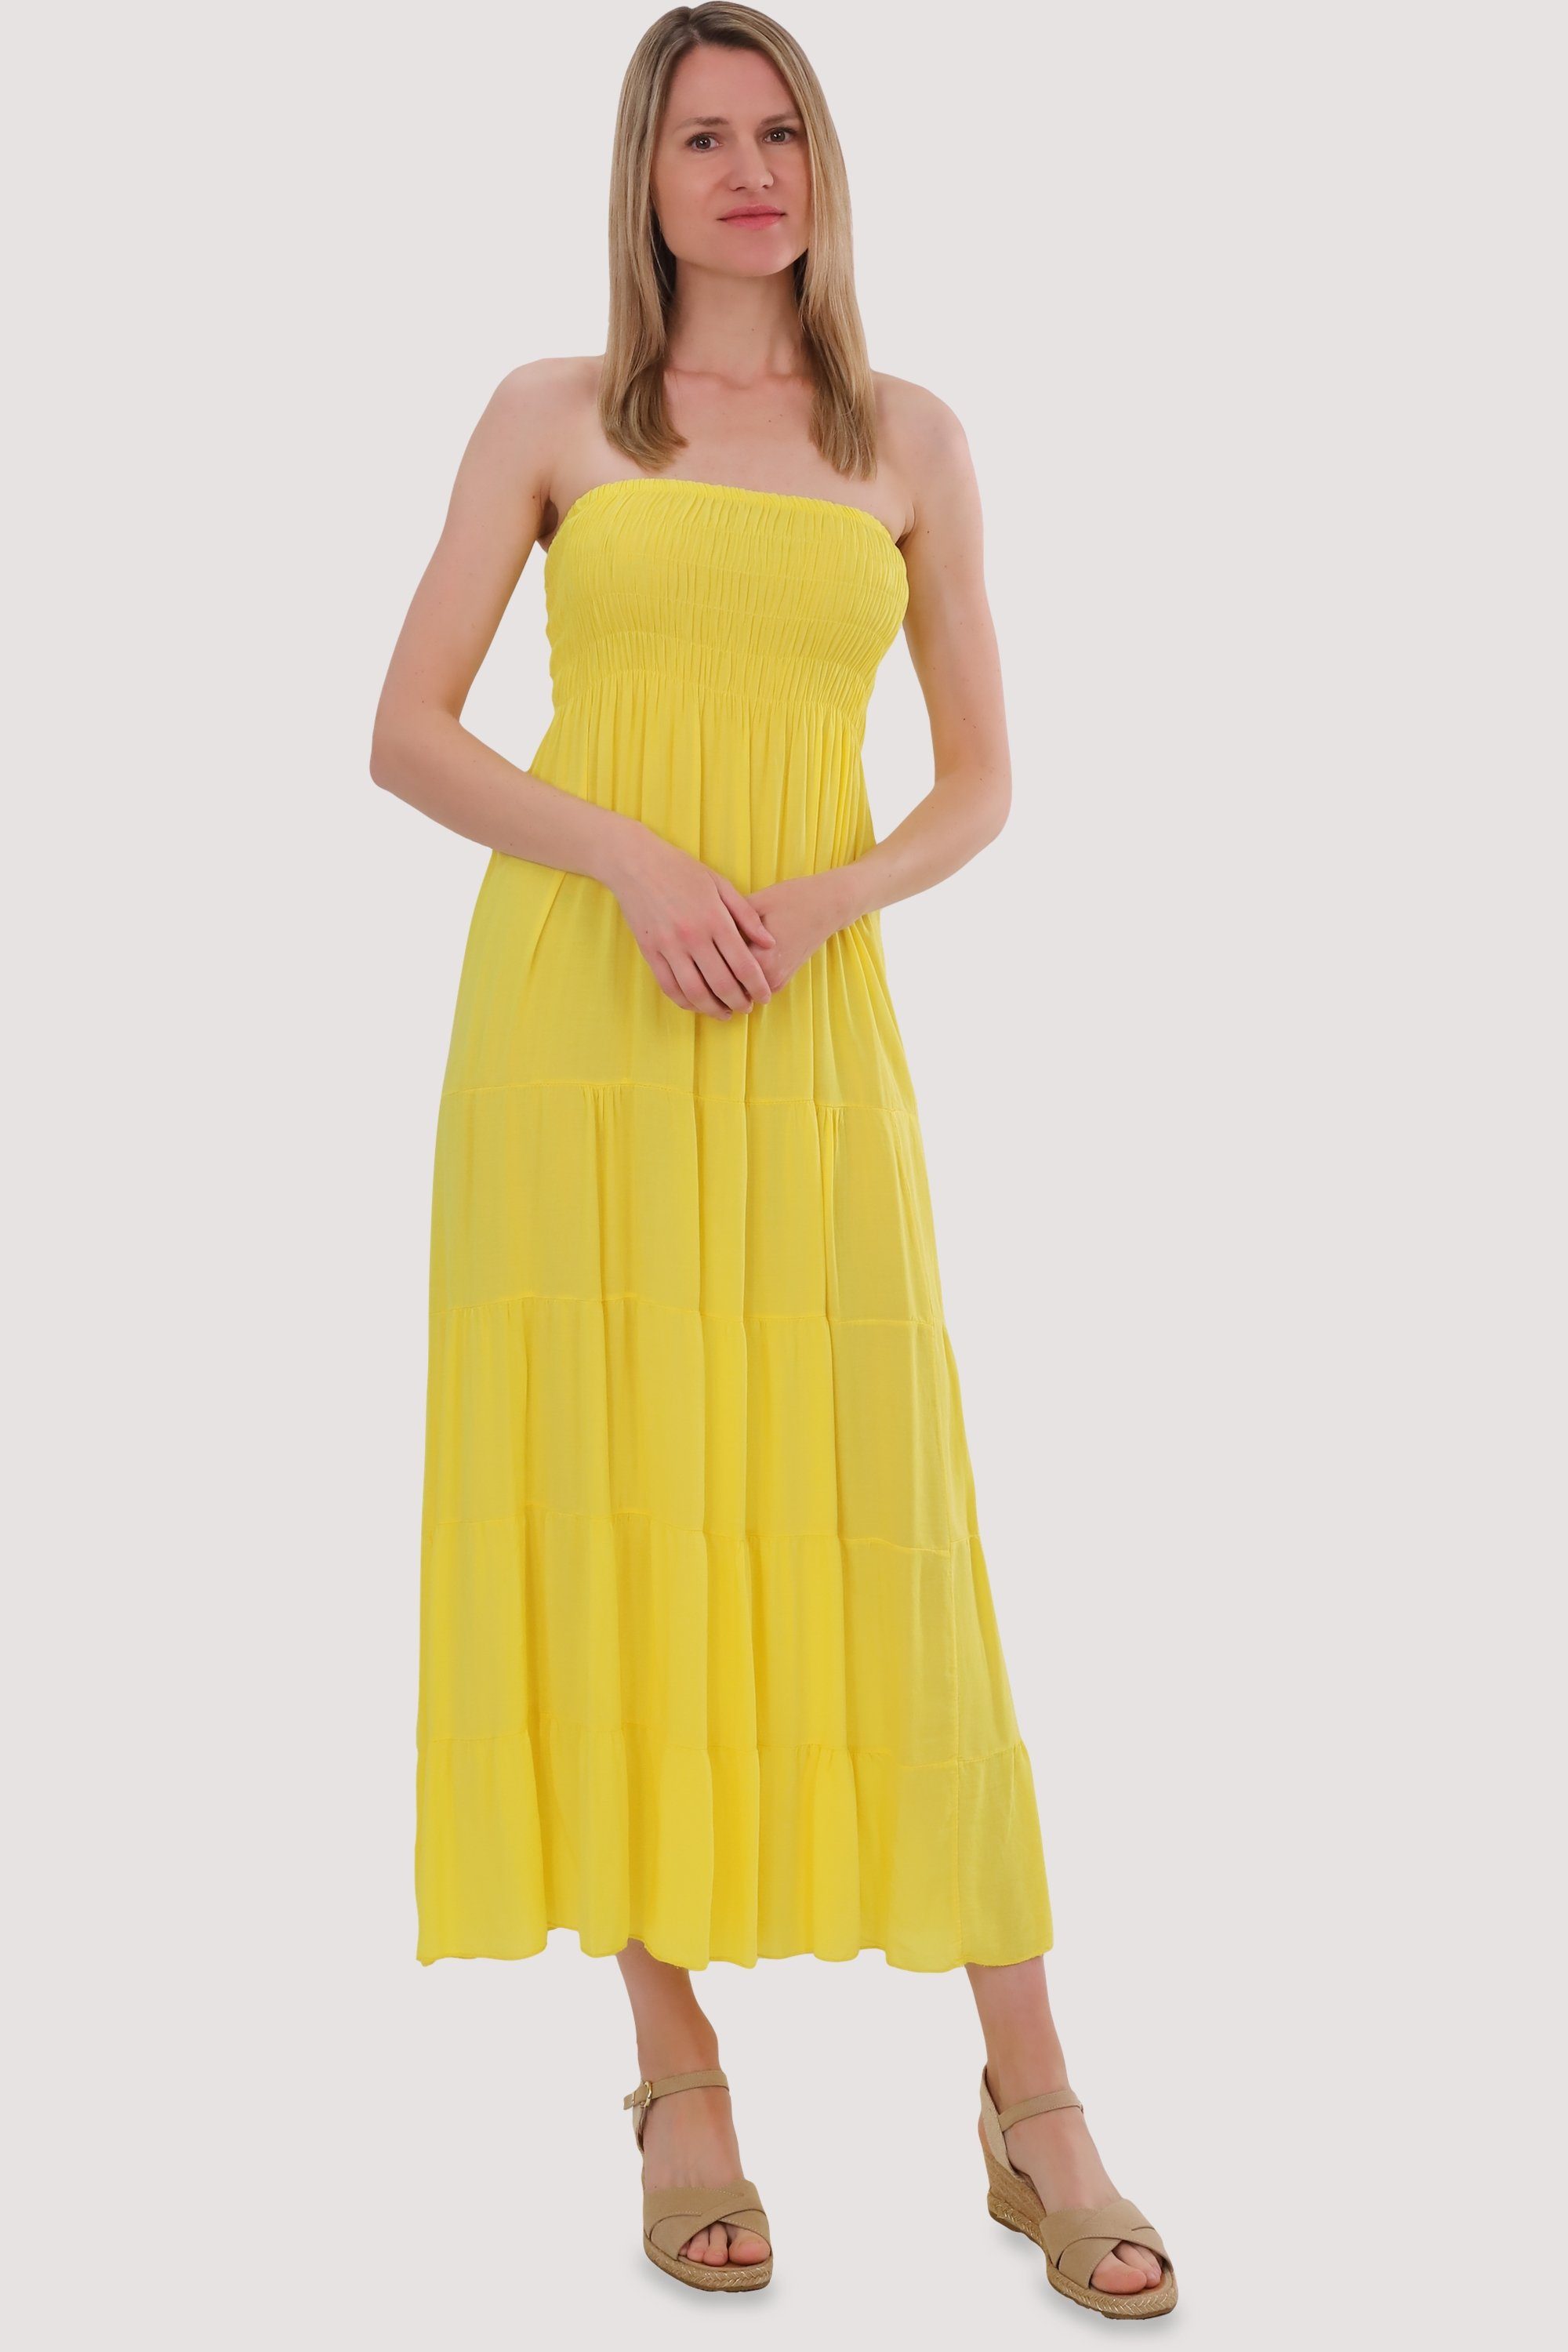 malito more than fashion Bandeaukleid 4635 figurumspielendes Sommerkleid Strandkleid Einheitsgröße gelb